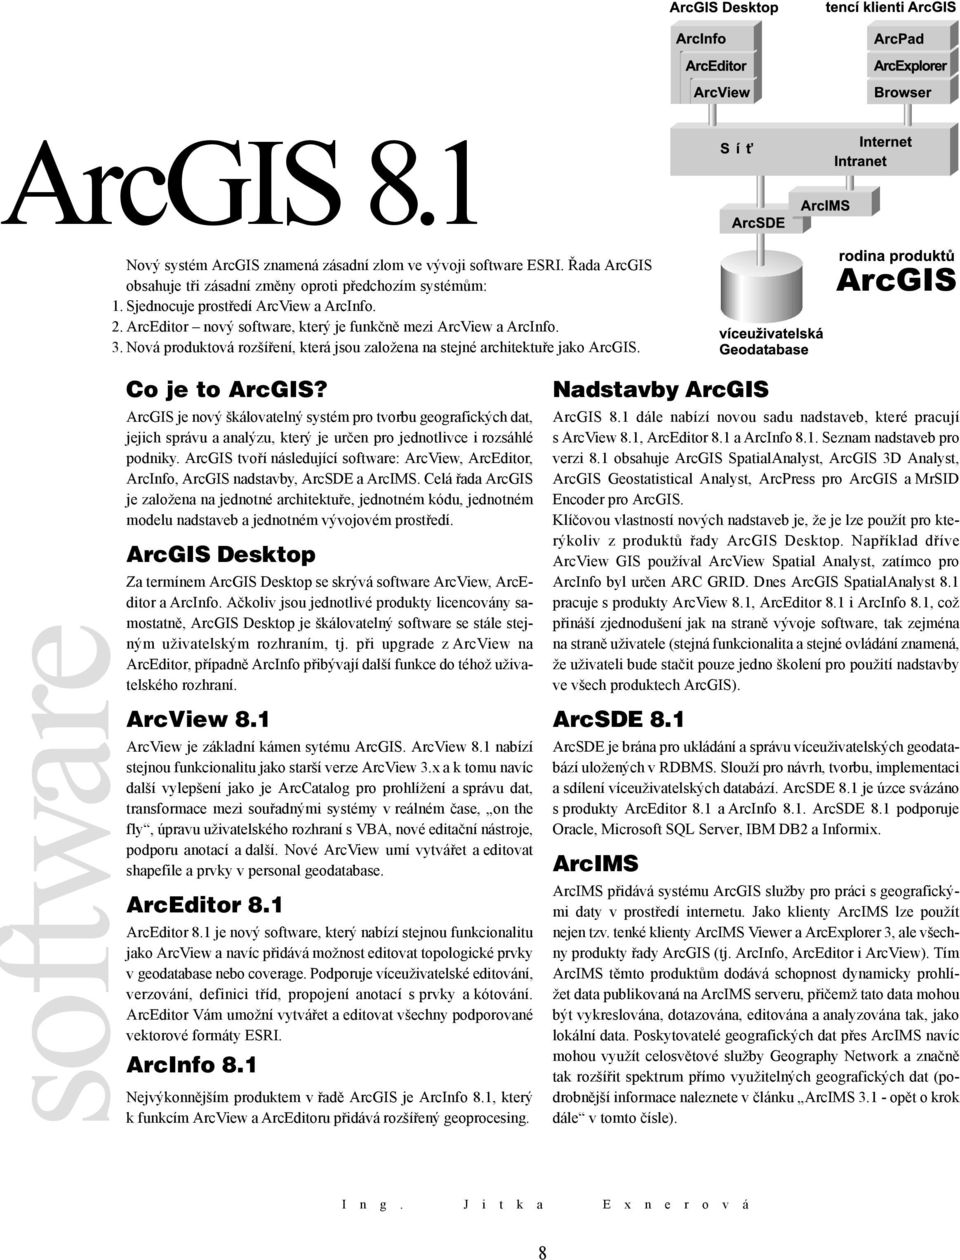 ArcGIS je nový škálovatelný systém pro tvorbu geografických dat, jejich správu a analýzu, který je určen pro jednotlivce i rozsáhlé podniky.